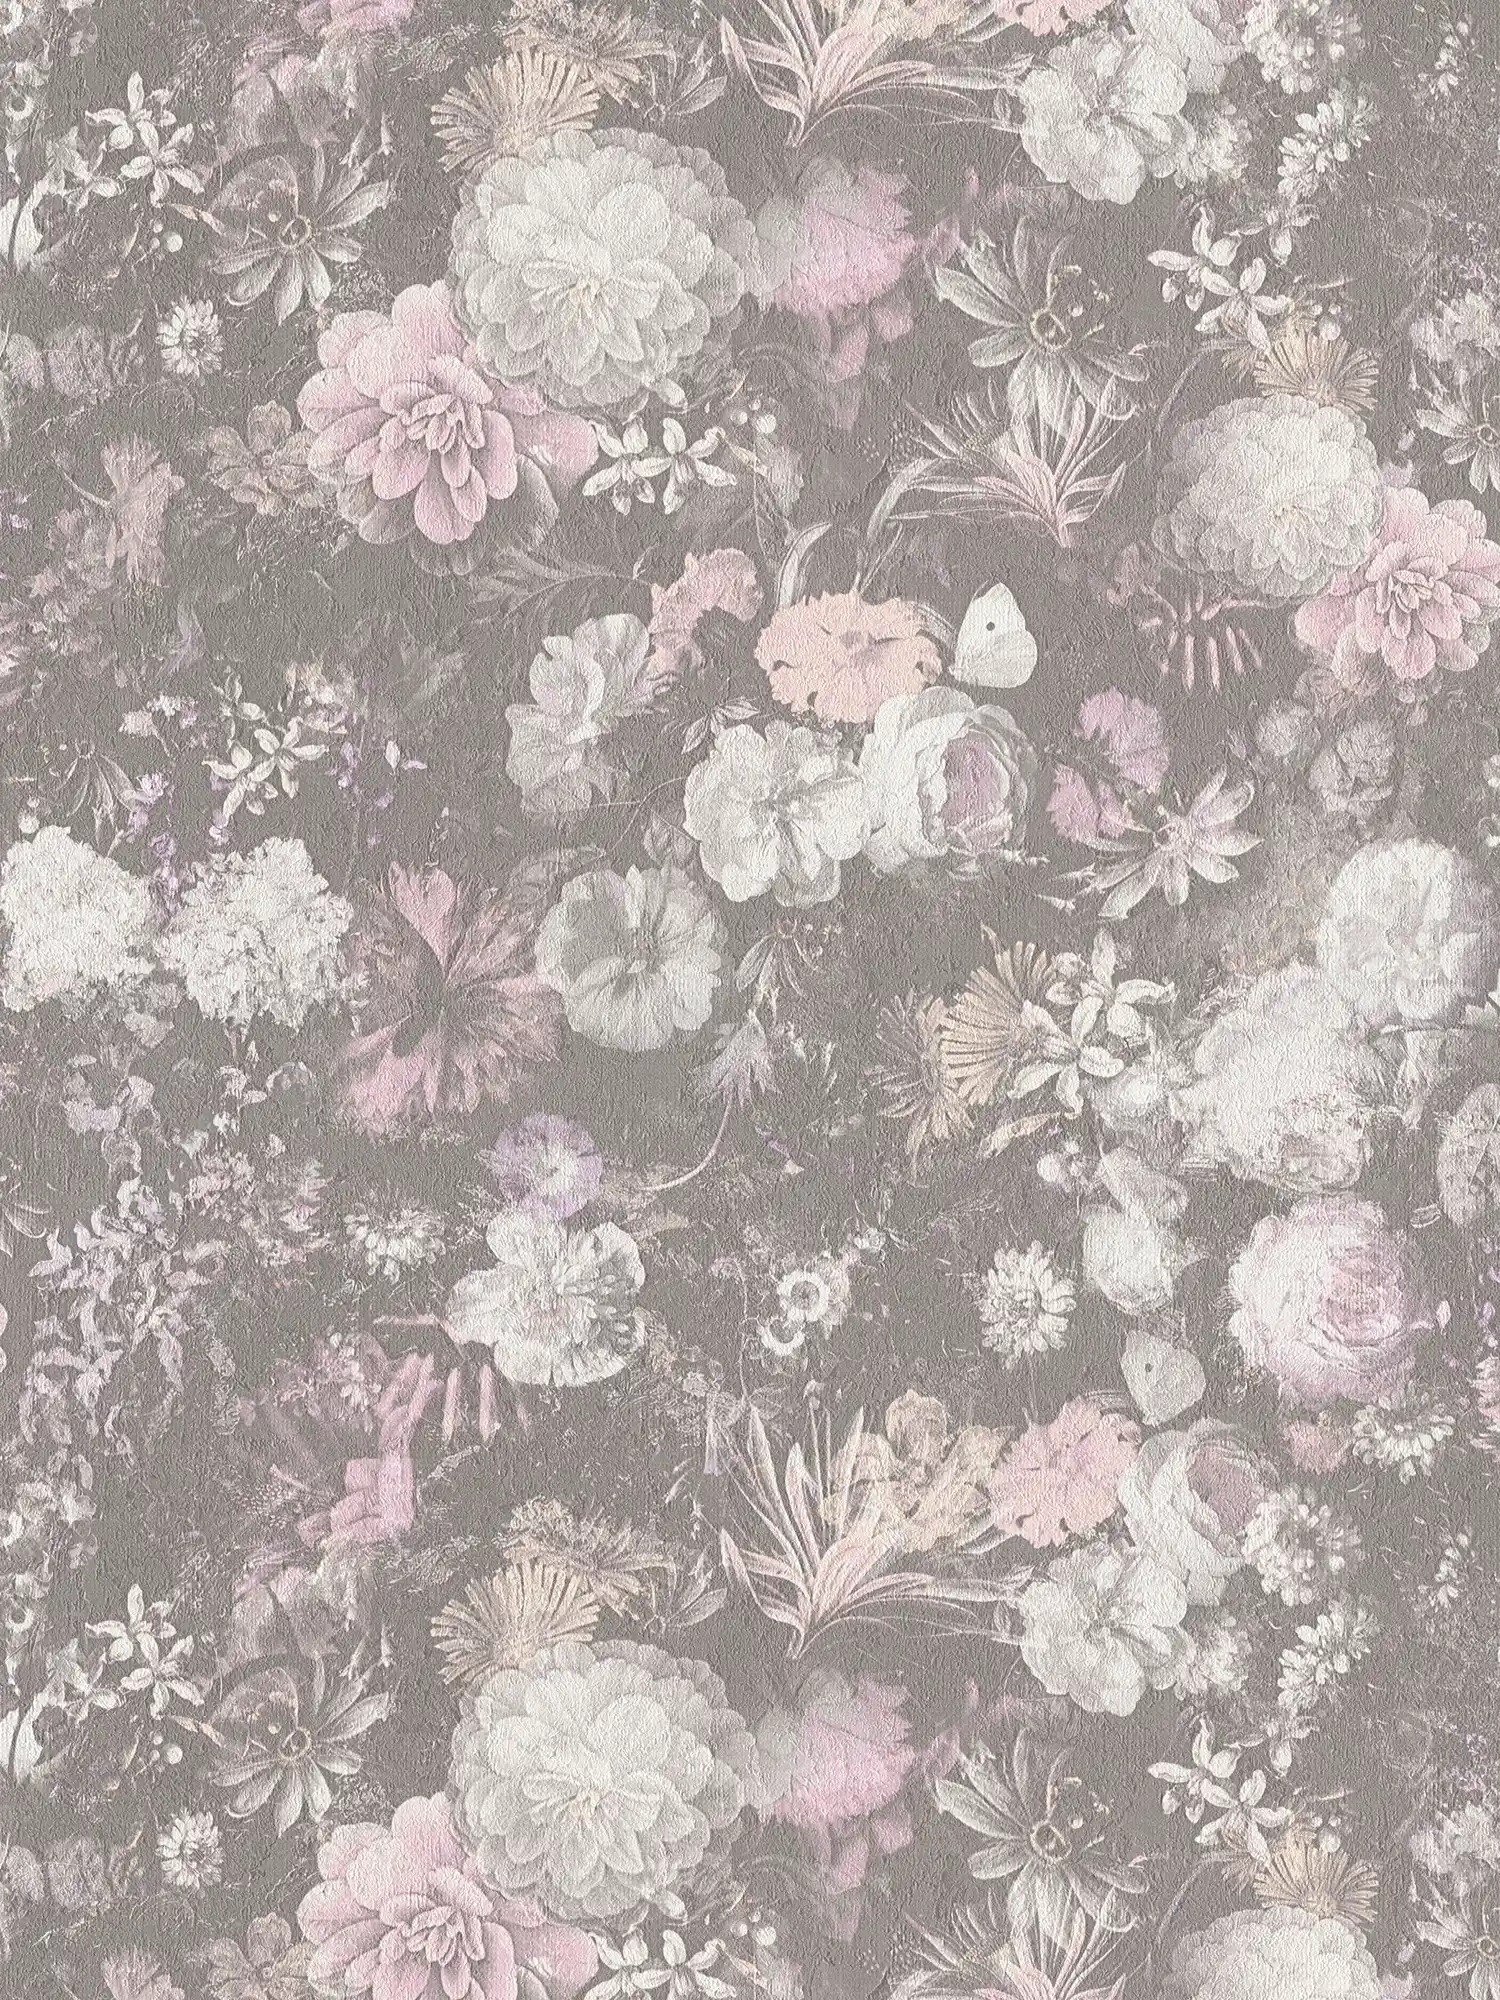 Floral wallpaper pink & grey in vintage design
